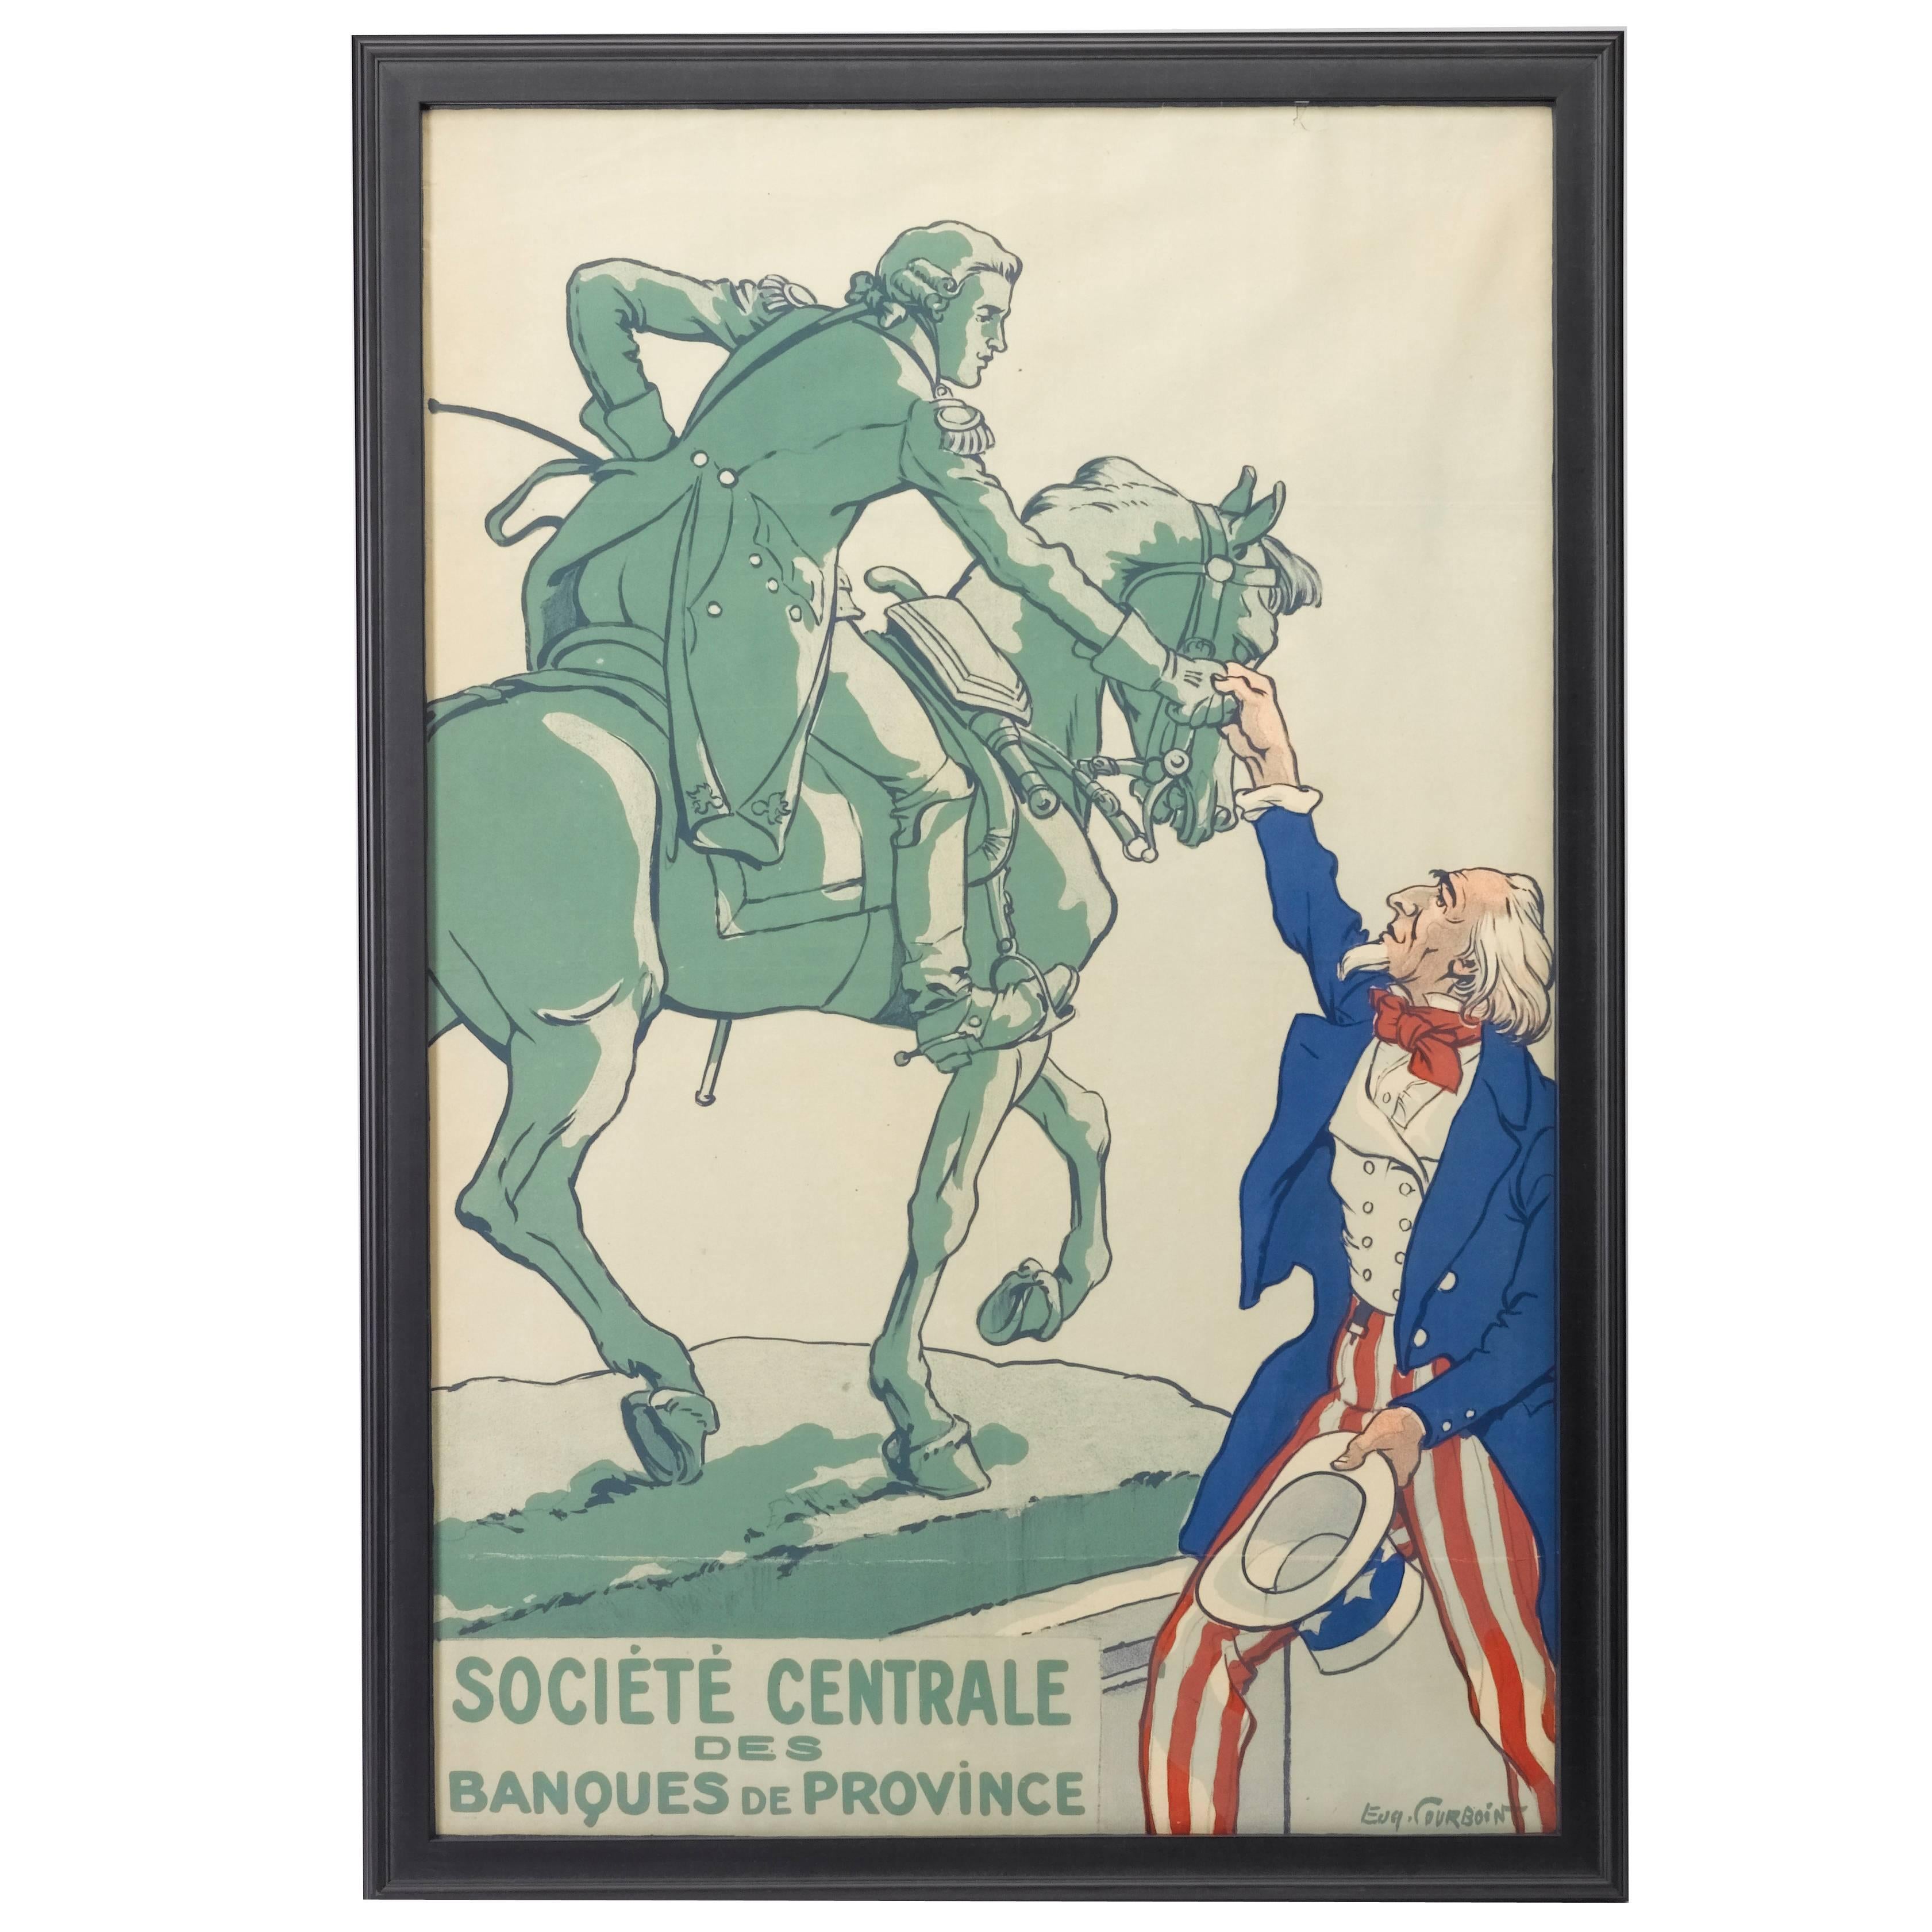 WWI Vintage Poster by Courboin, "Société Centrale Des Banques De Province" 1918